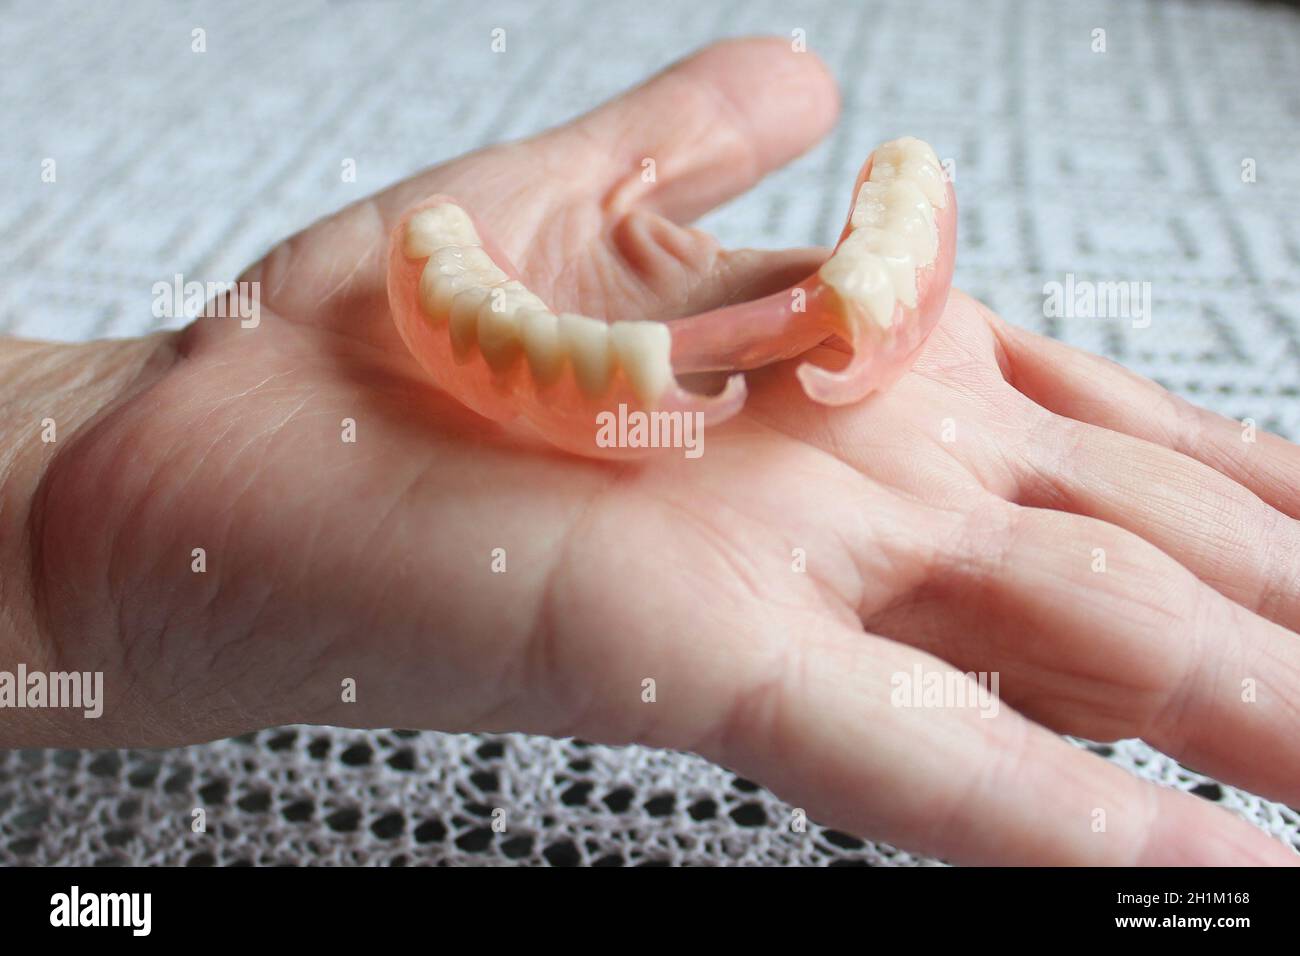 En nylon flexible prothèse sur la main des hommes. Dentiers amovibles souples, dépourvue de nylon, exempt de monomère hypoallergénique Banque D'Images